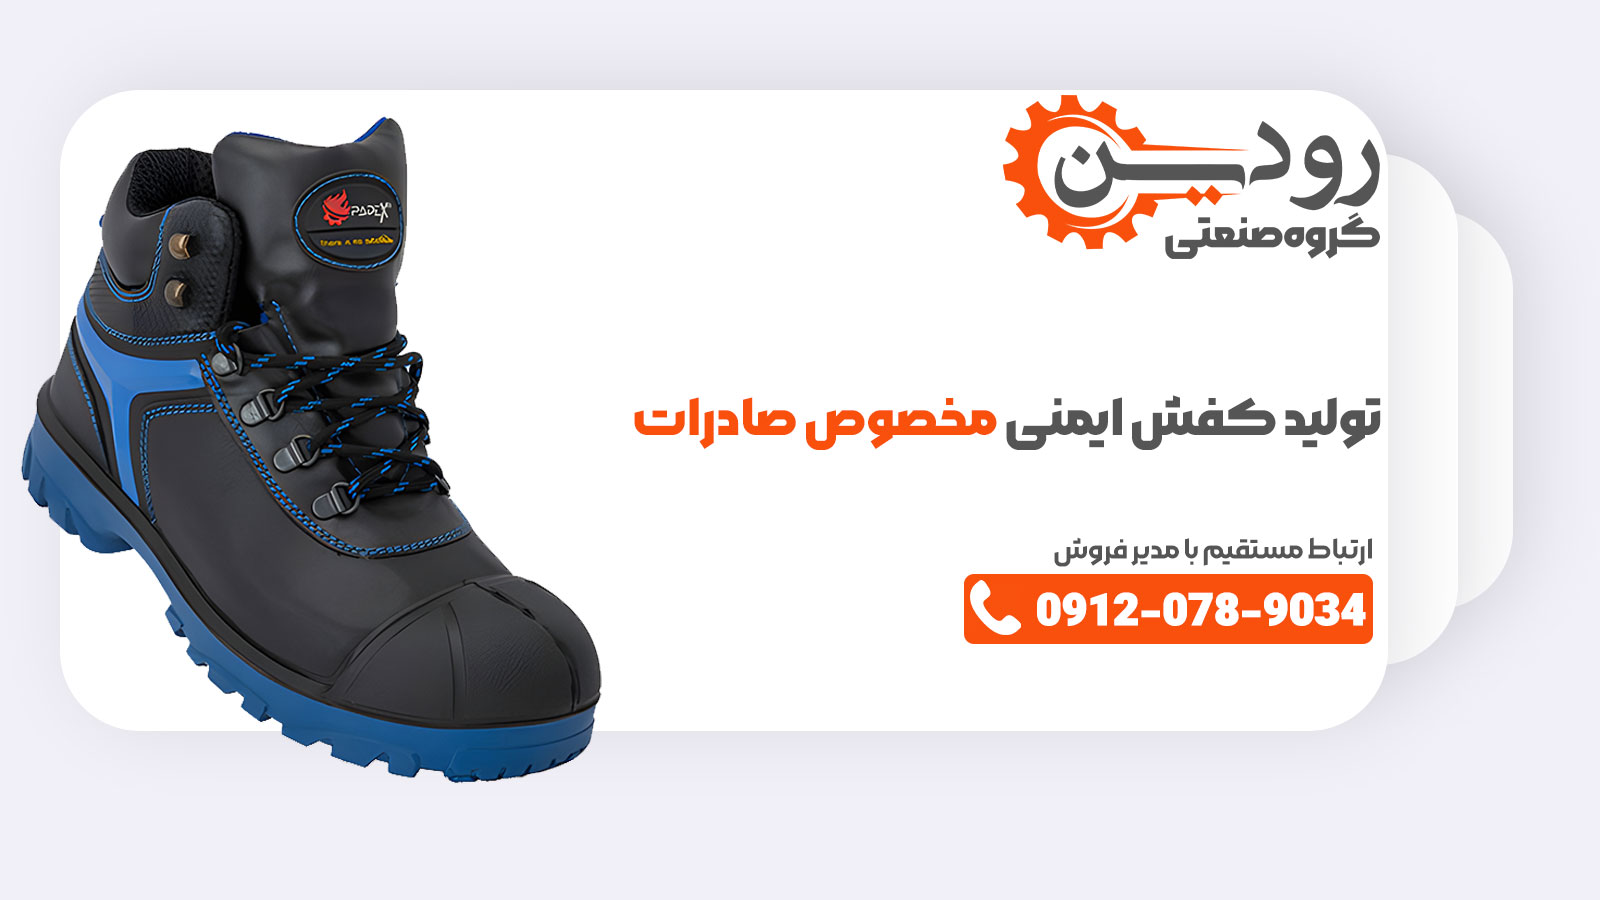 صادرات کفش ایمنی از کارخانه تولید کفش ایمنی صادراتی در ایران